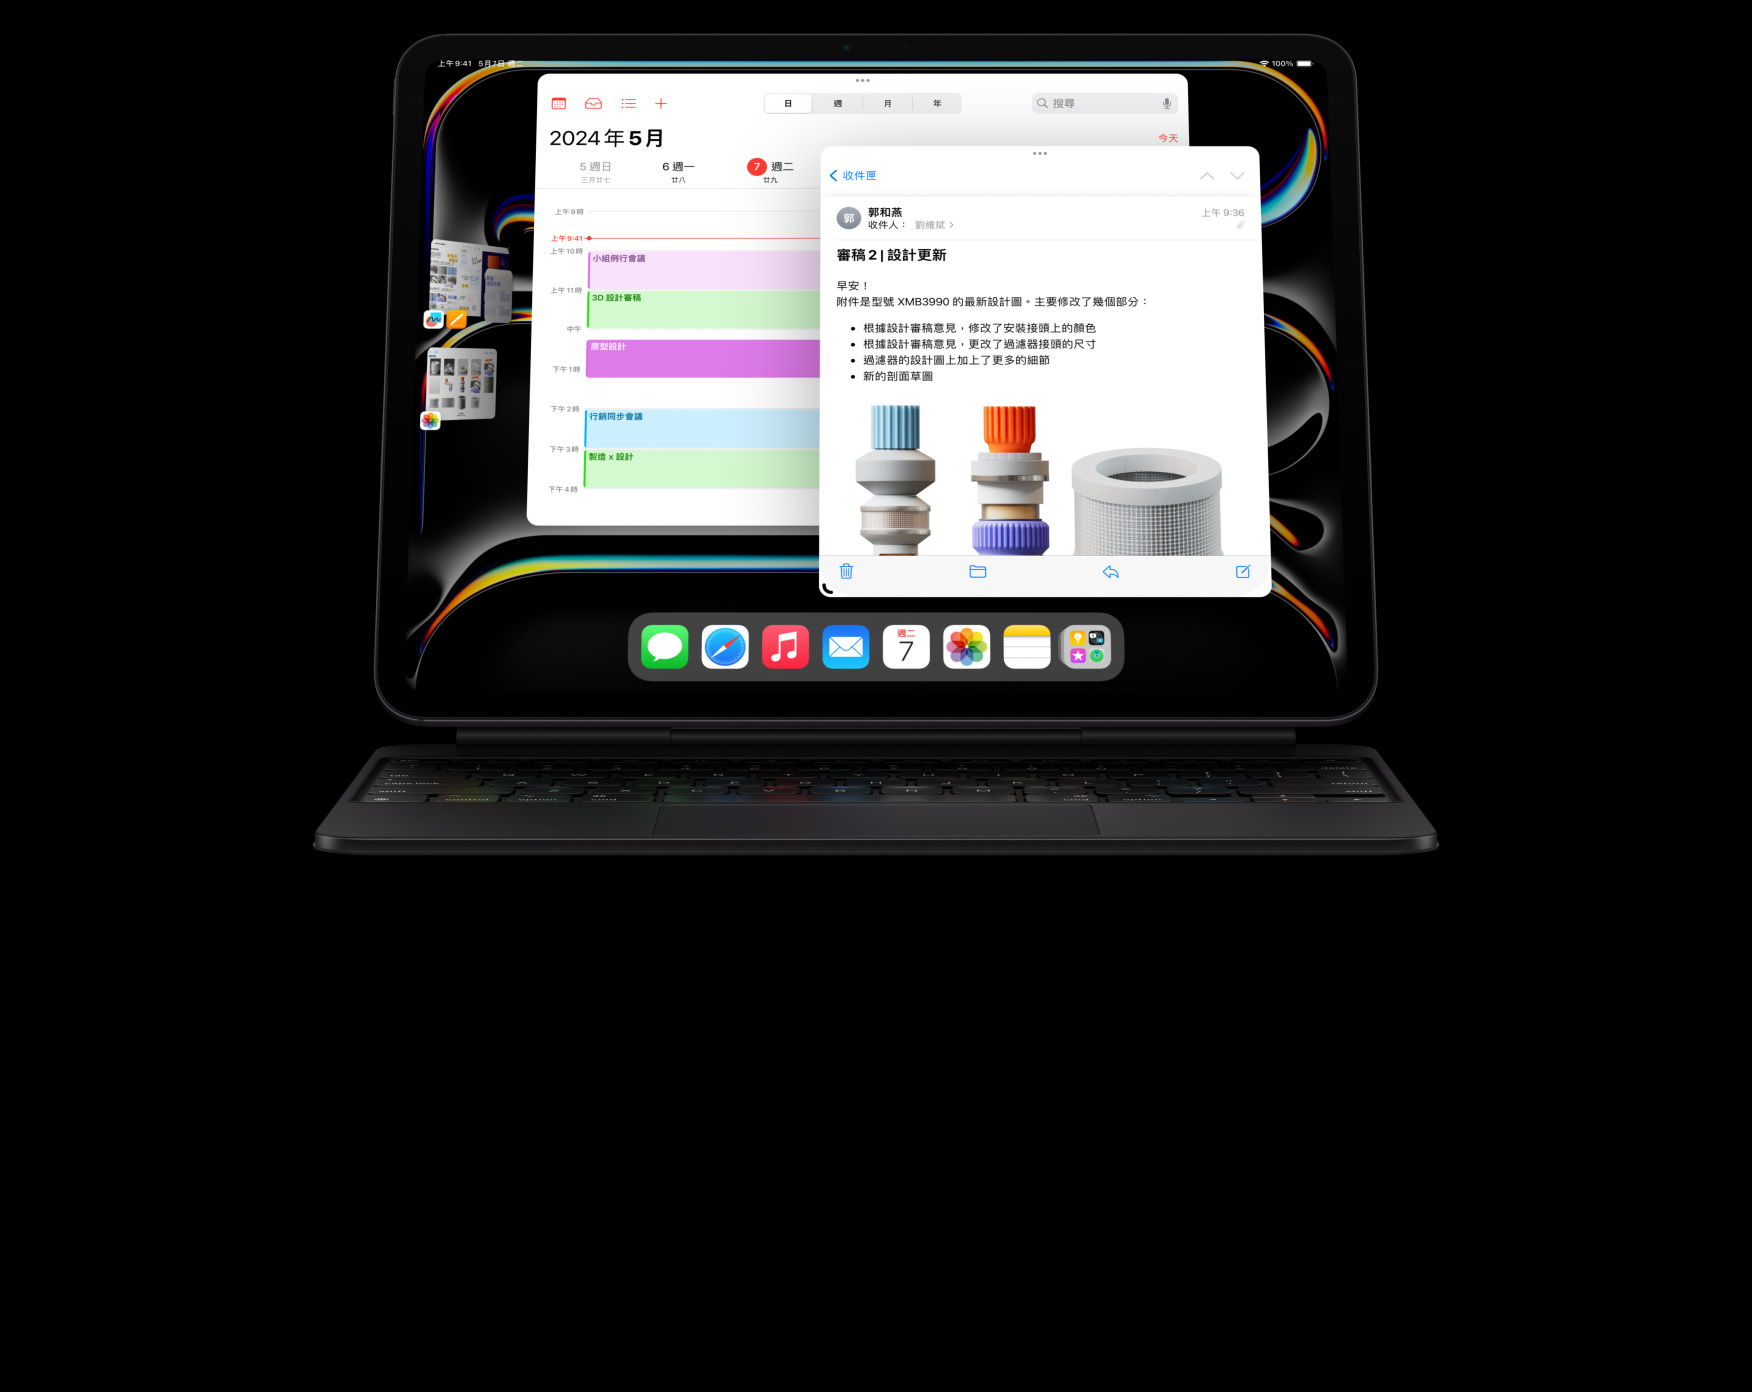 橫向放置的 iPad Pro 貼合在巧控鍵盤上，使用者打開了多款 app 同時處理多項任務。